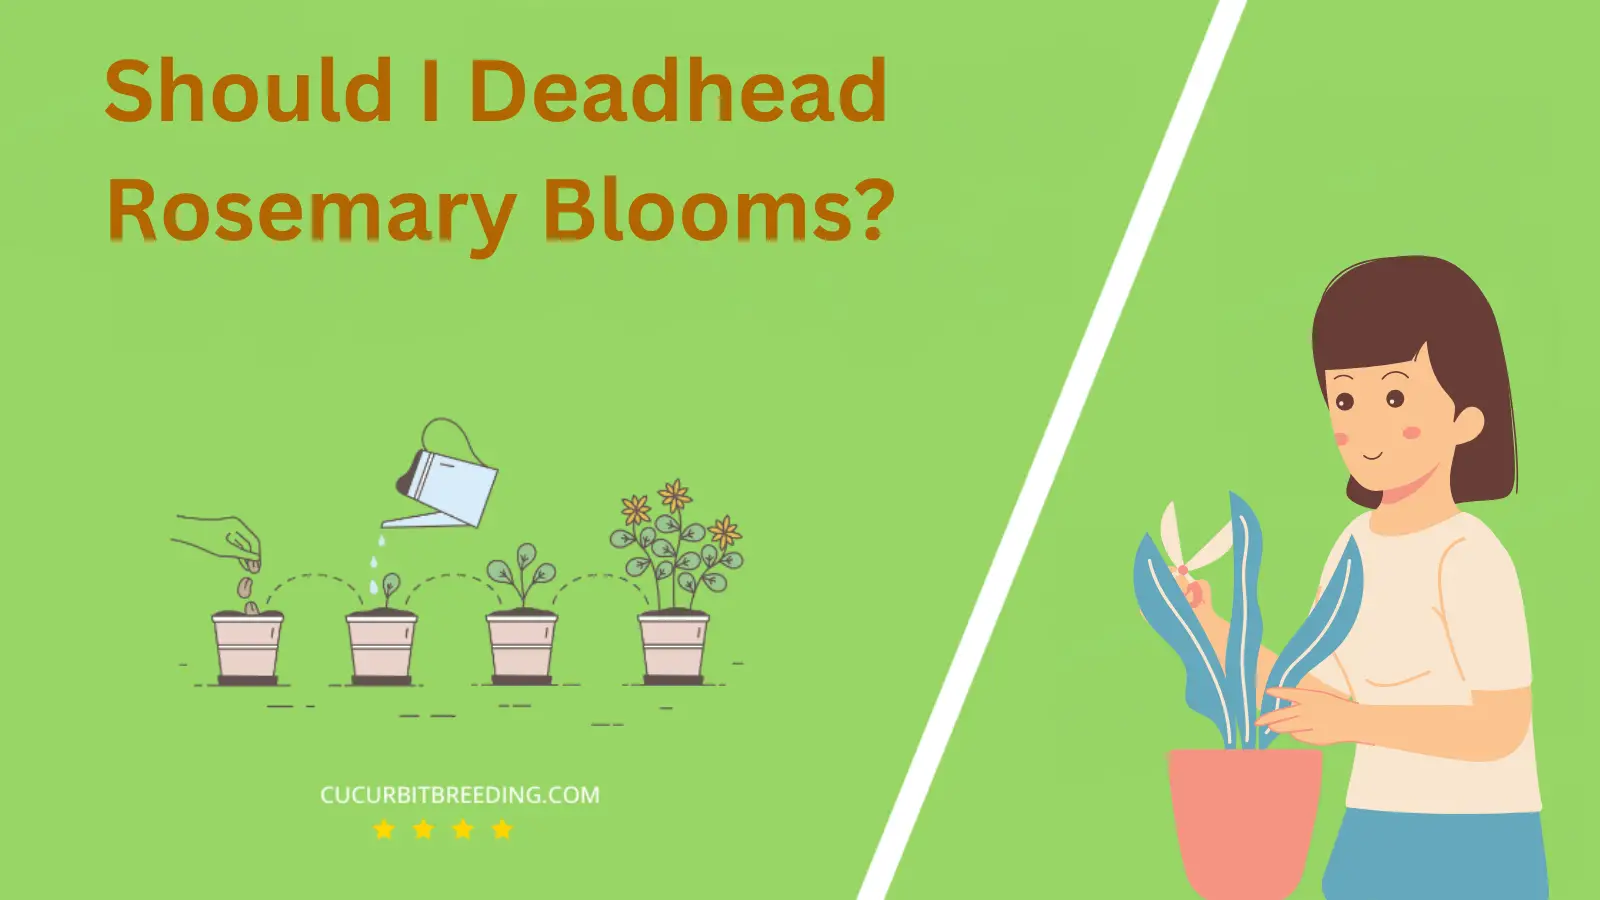 Should I Deadhead Rosemary Blooms?